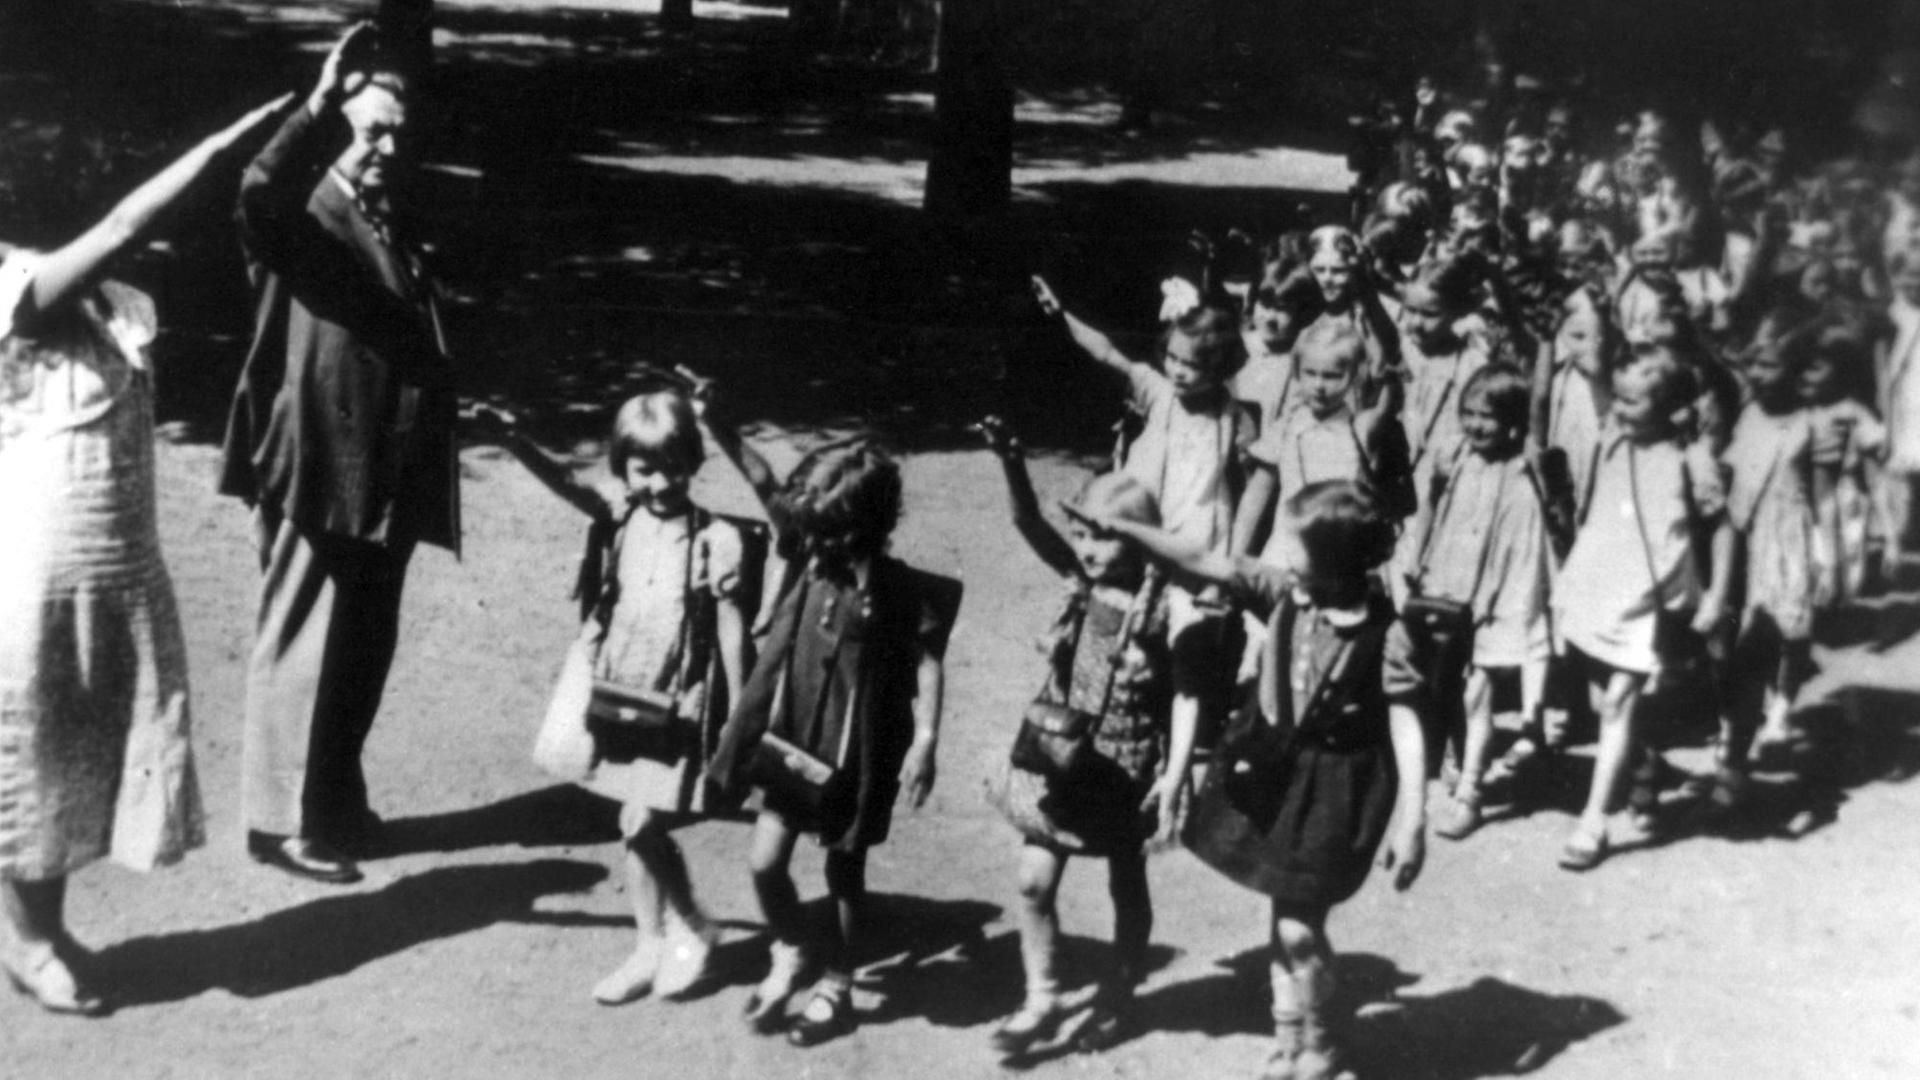 Die rechte Hand zum Hitlergruß erhoben gehen Erstklässler 1933 in Viererreihen an zwei ebenfalls grüßenden Erwachsenen (vermutlich Lehrpersonal) vorbei.